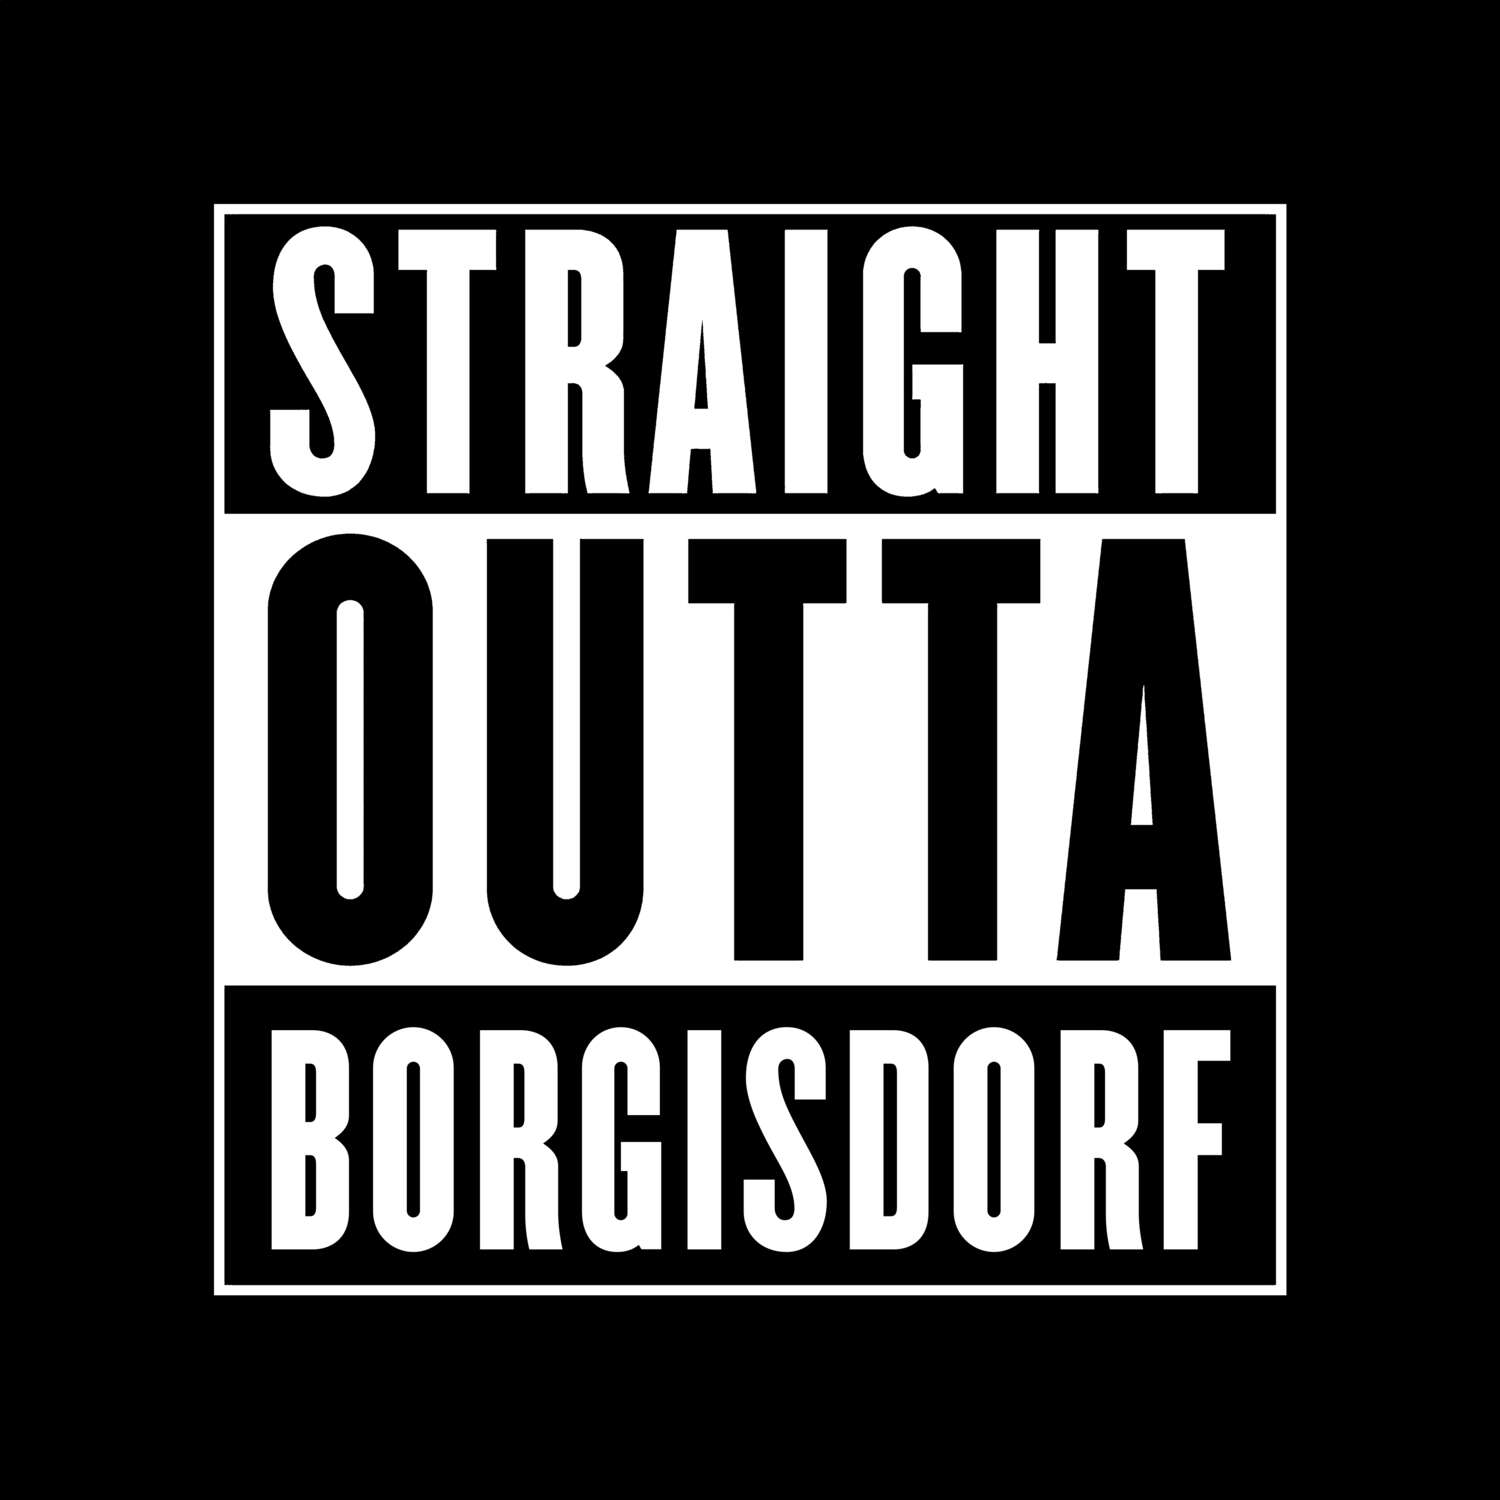 Borgisdorf T-Shirt »Straight Outta«